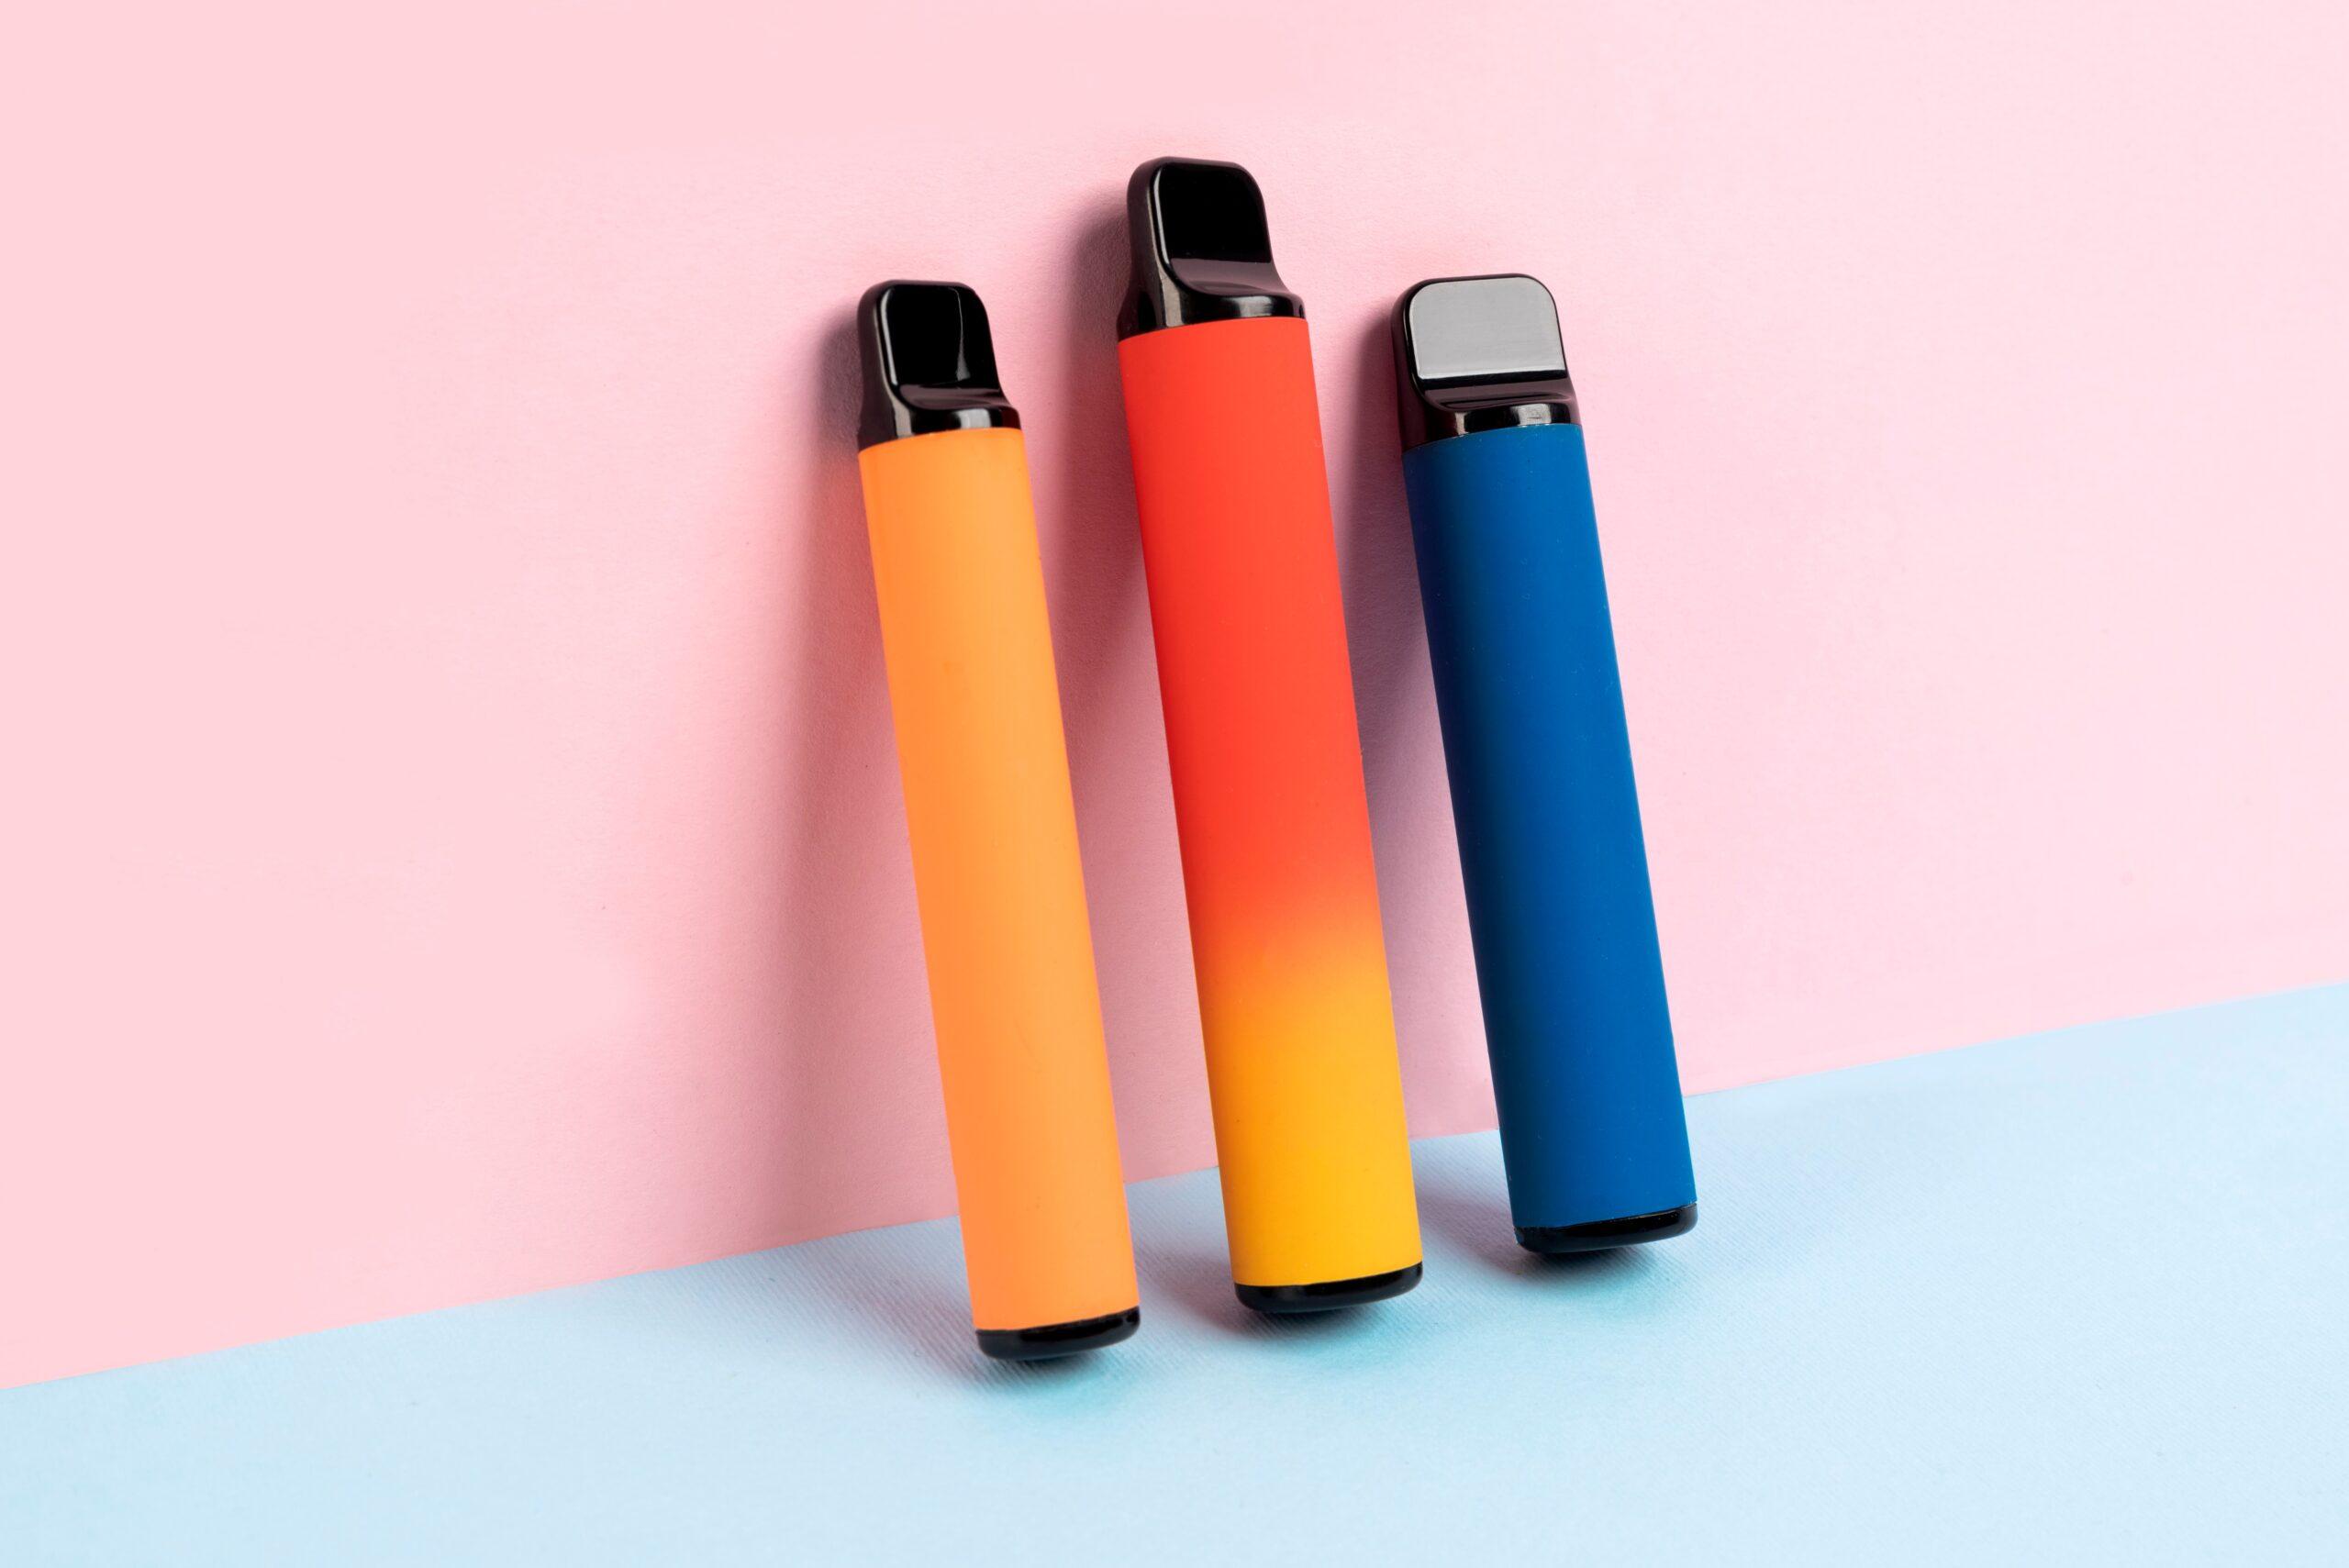 Drei Einweg-E-Zigaretten in den Farben Orange, Rot-Gelb und Blau stehen aufrecht auf einem zweifarbigen Hintergrund in Pastellrosa und Pastellblau.